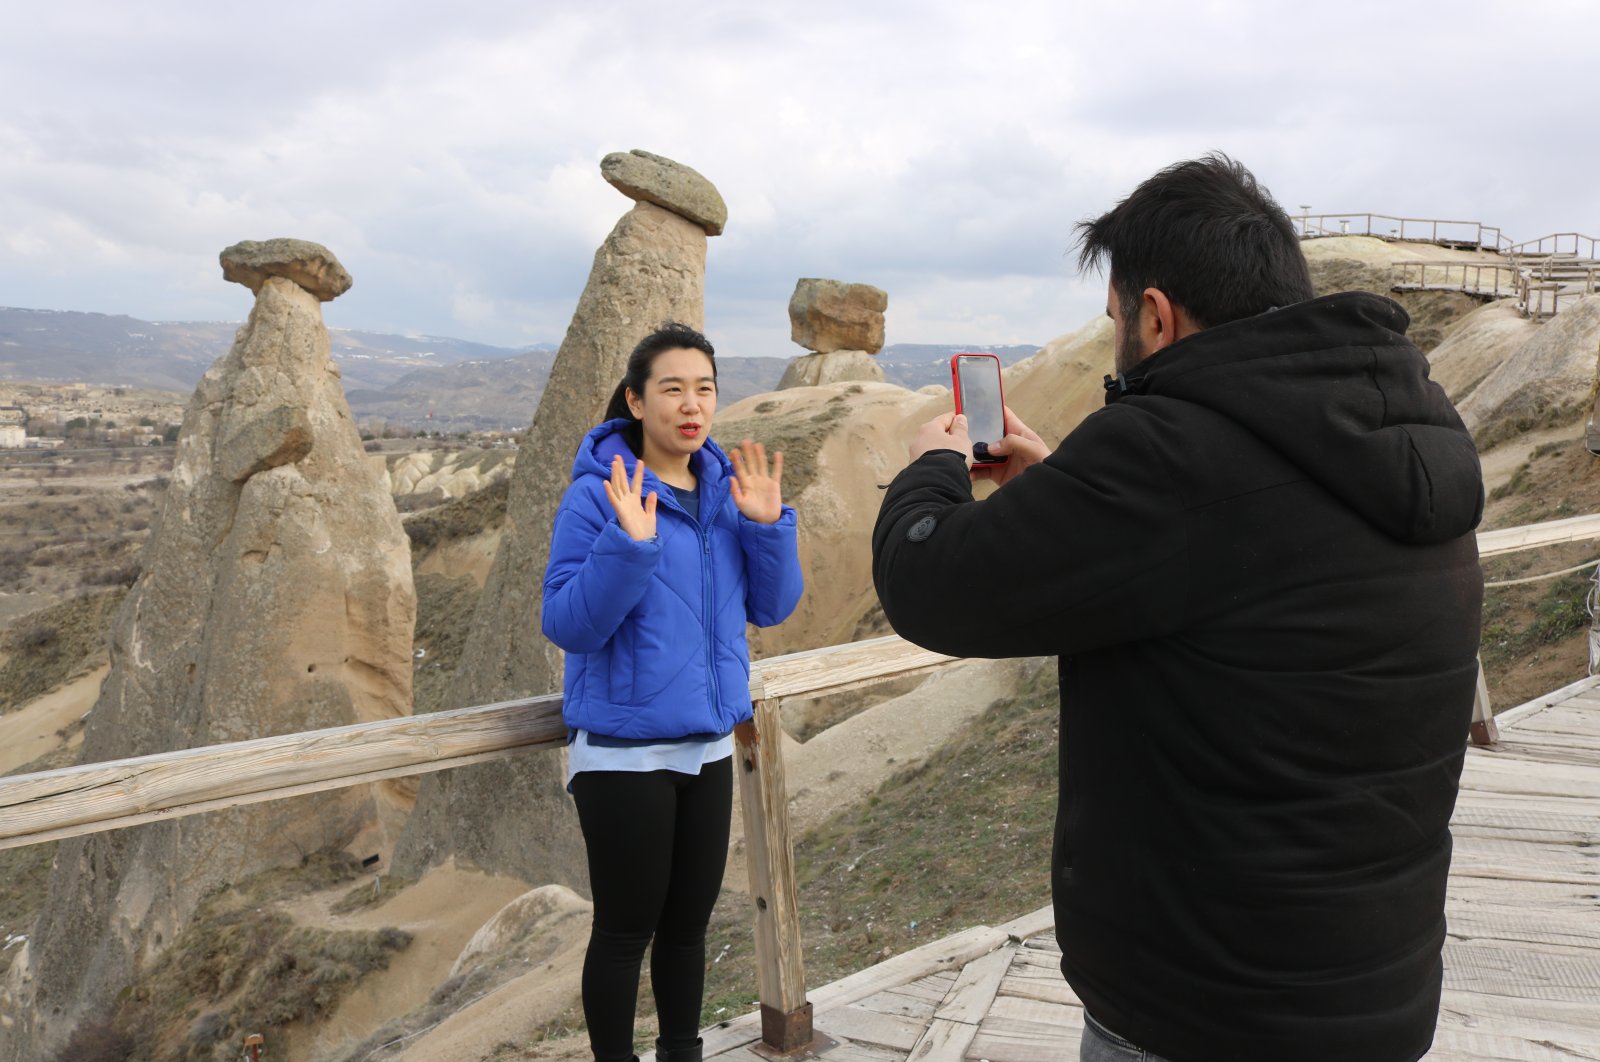  Эмигранты и студенты рекламируют туризм в Турции